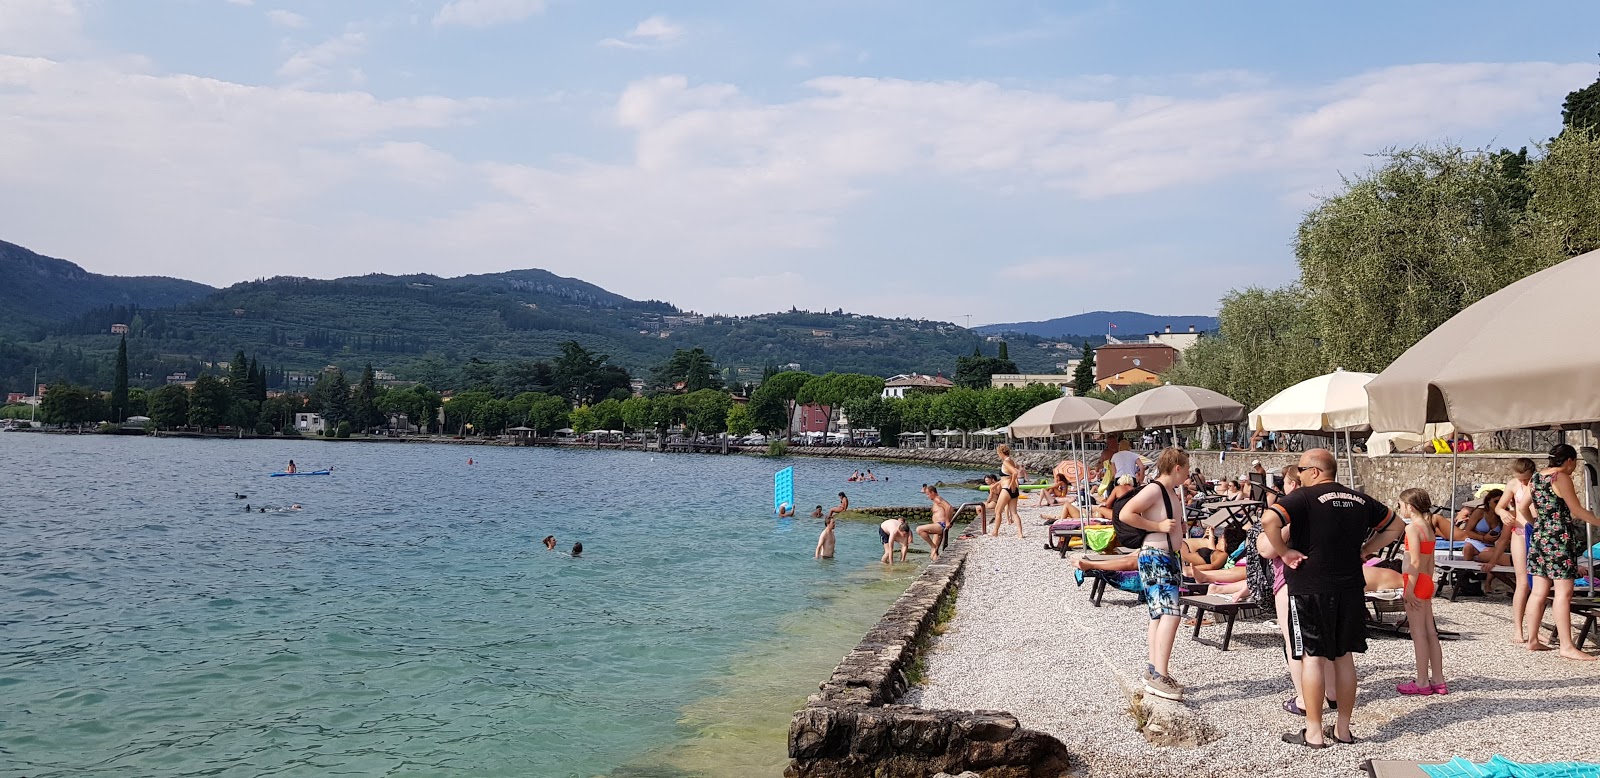 Foto de Spiaggia La Cavalla Garda - lugar popular entre los conocedores del relax